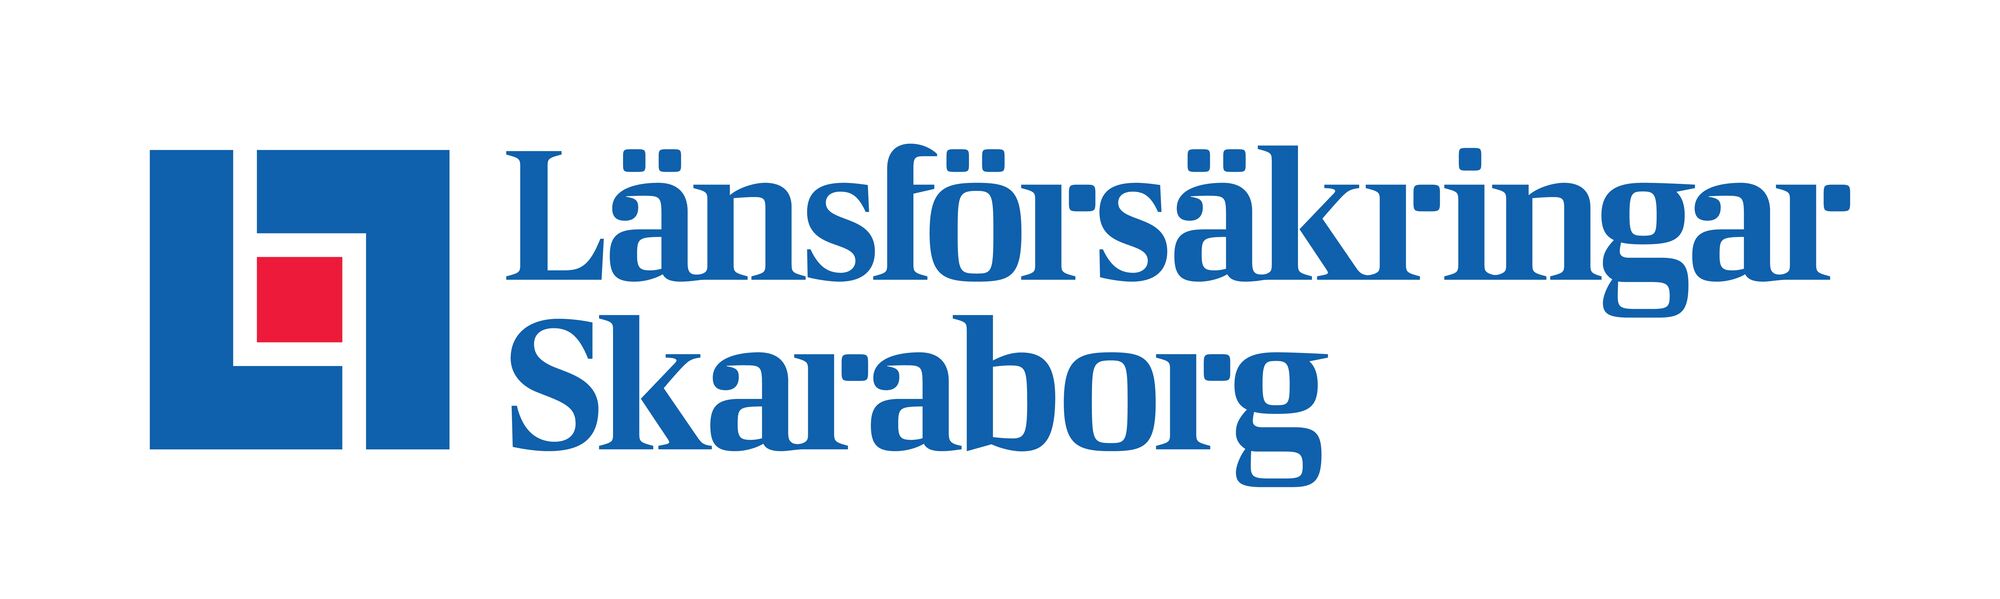 Lansforsakringar Skaraborg